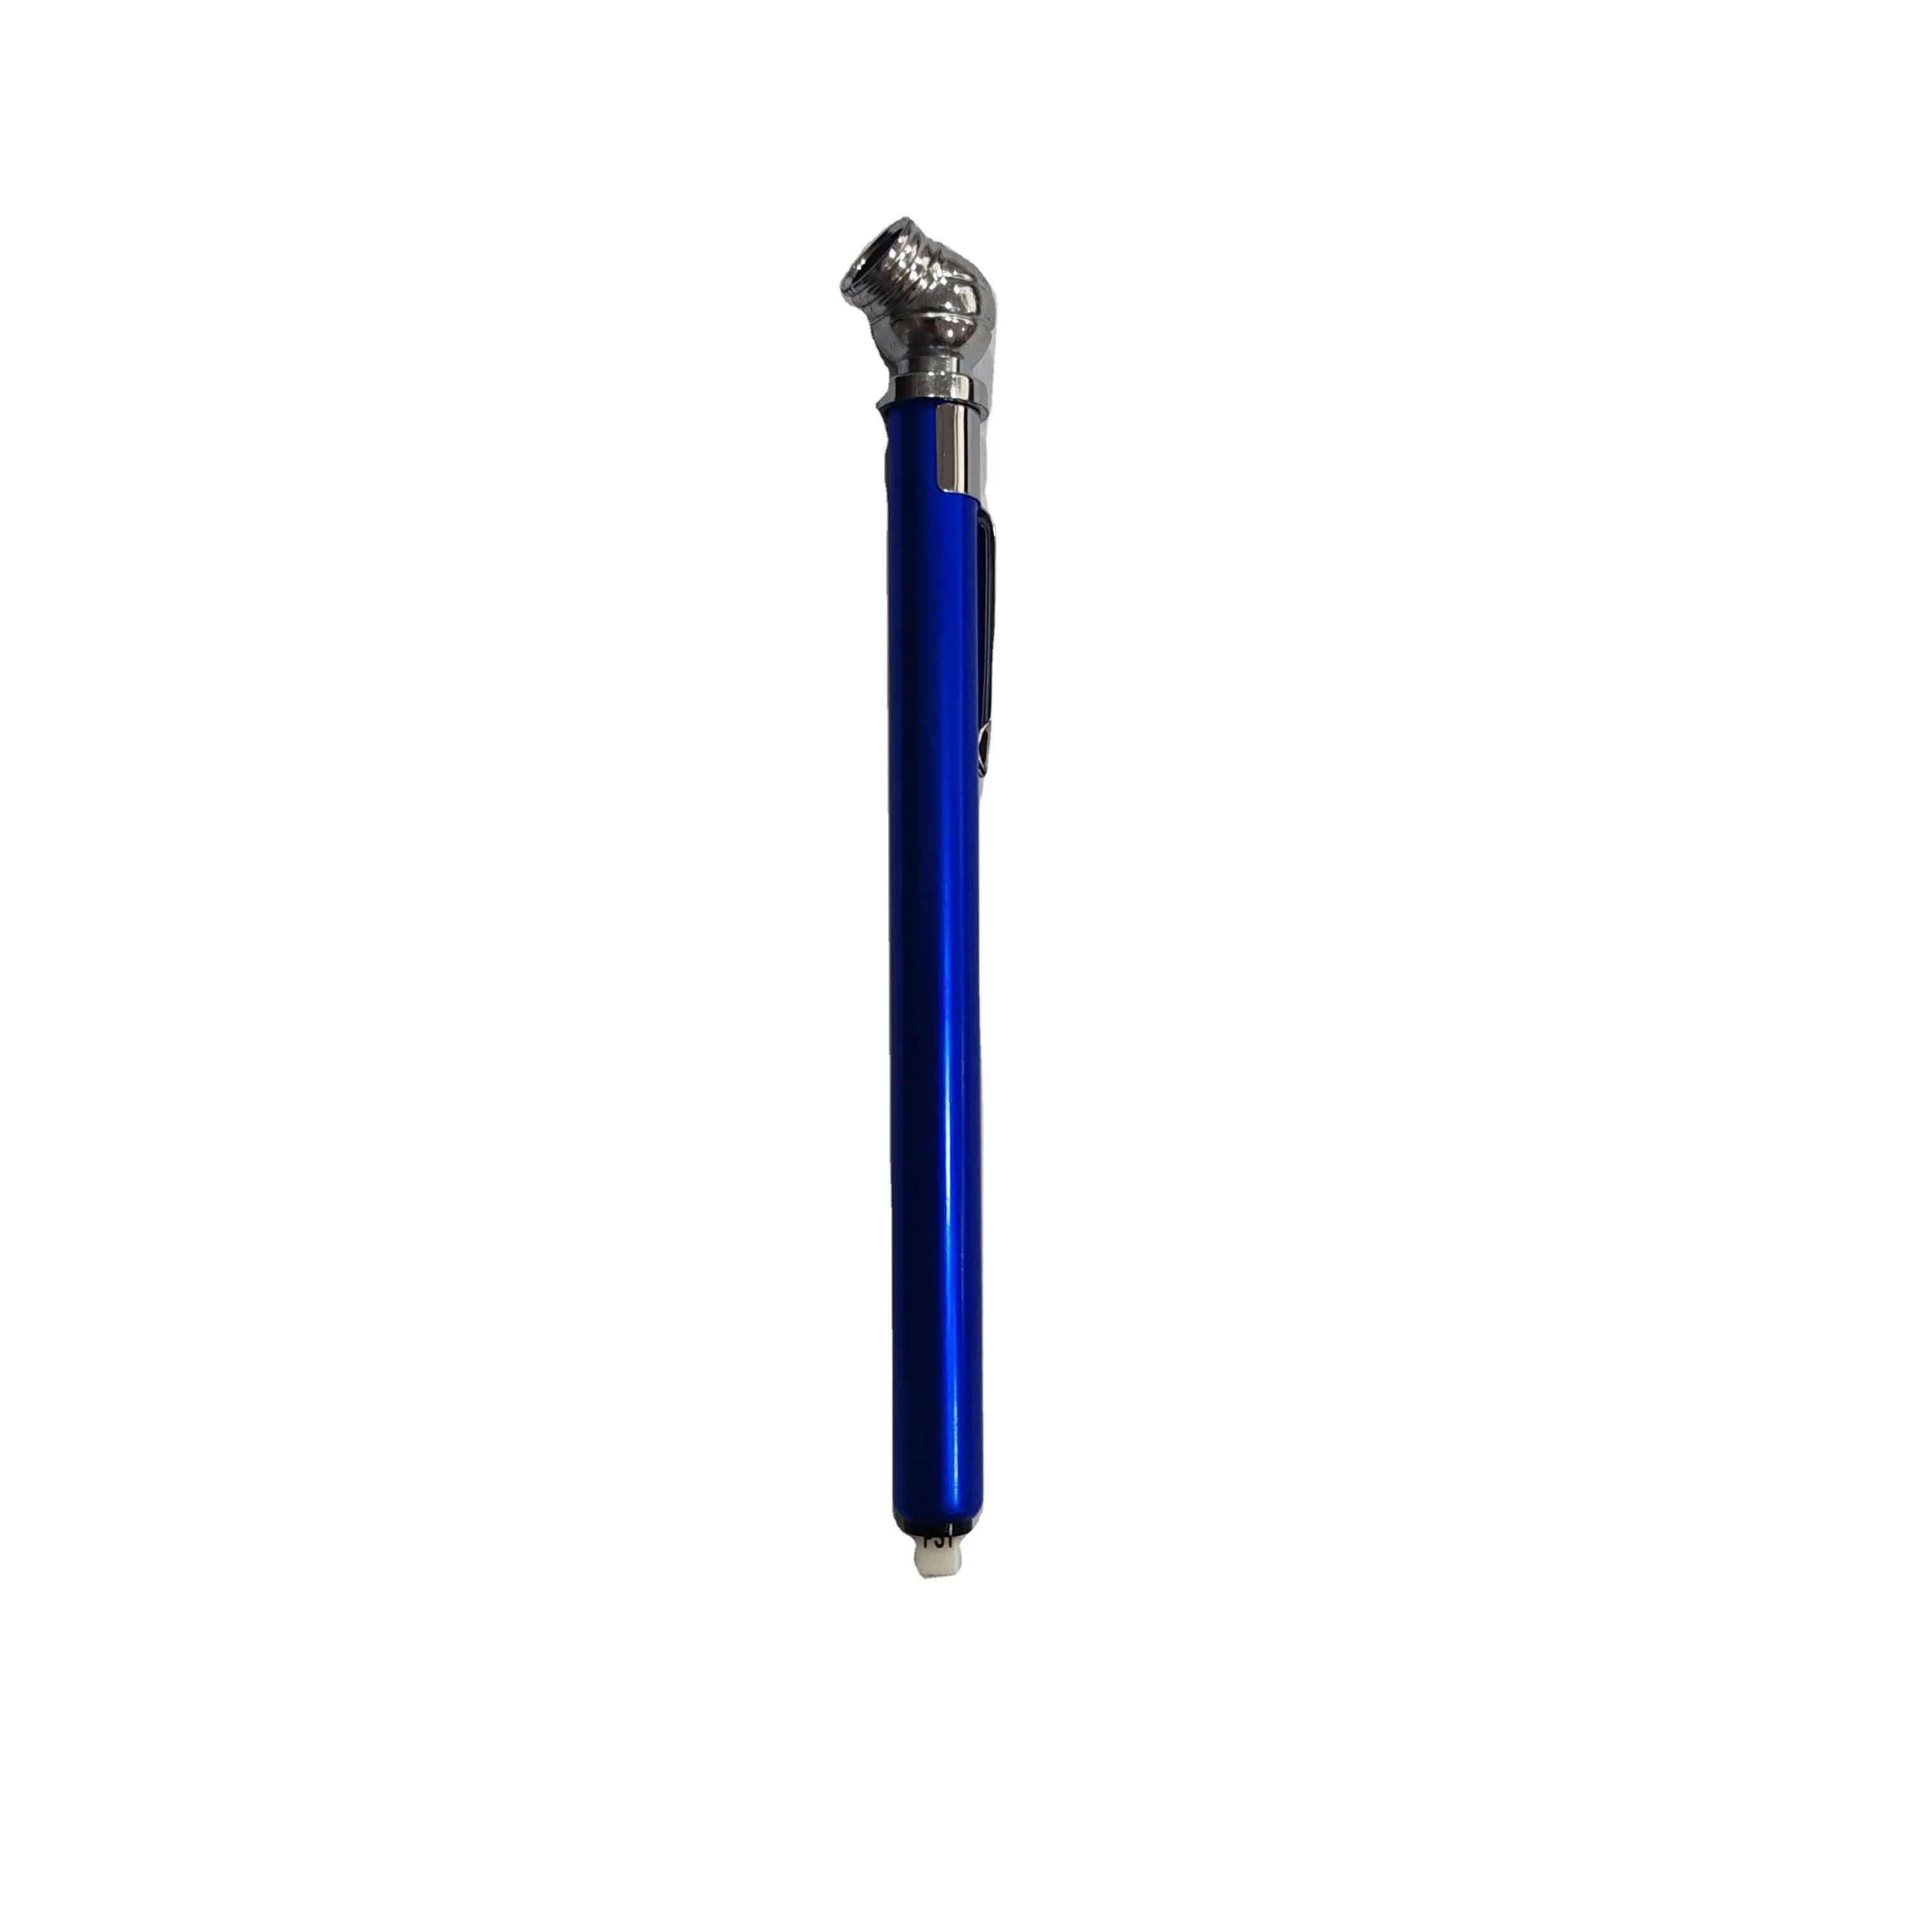 مقياس إطارات أزرق 10-100PSI صغير نوع القلم مقياس التفريغ للترويج 4 جوانب ABS مؤشر إطارات أدوات الألومنيوم المضغوطة بقلم المشبك